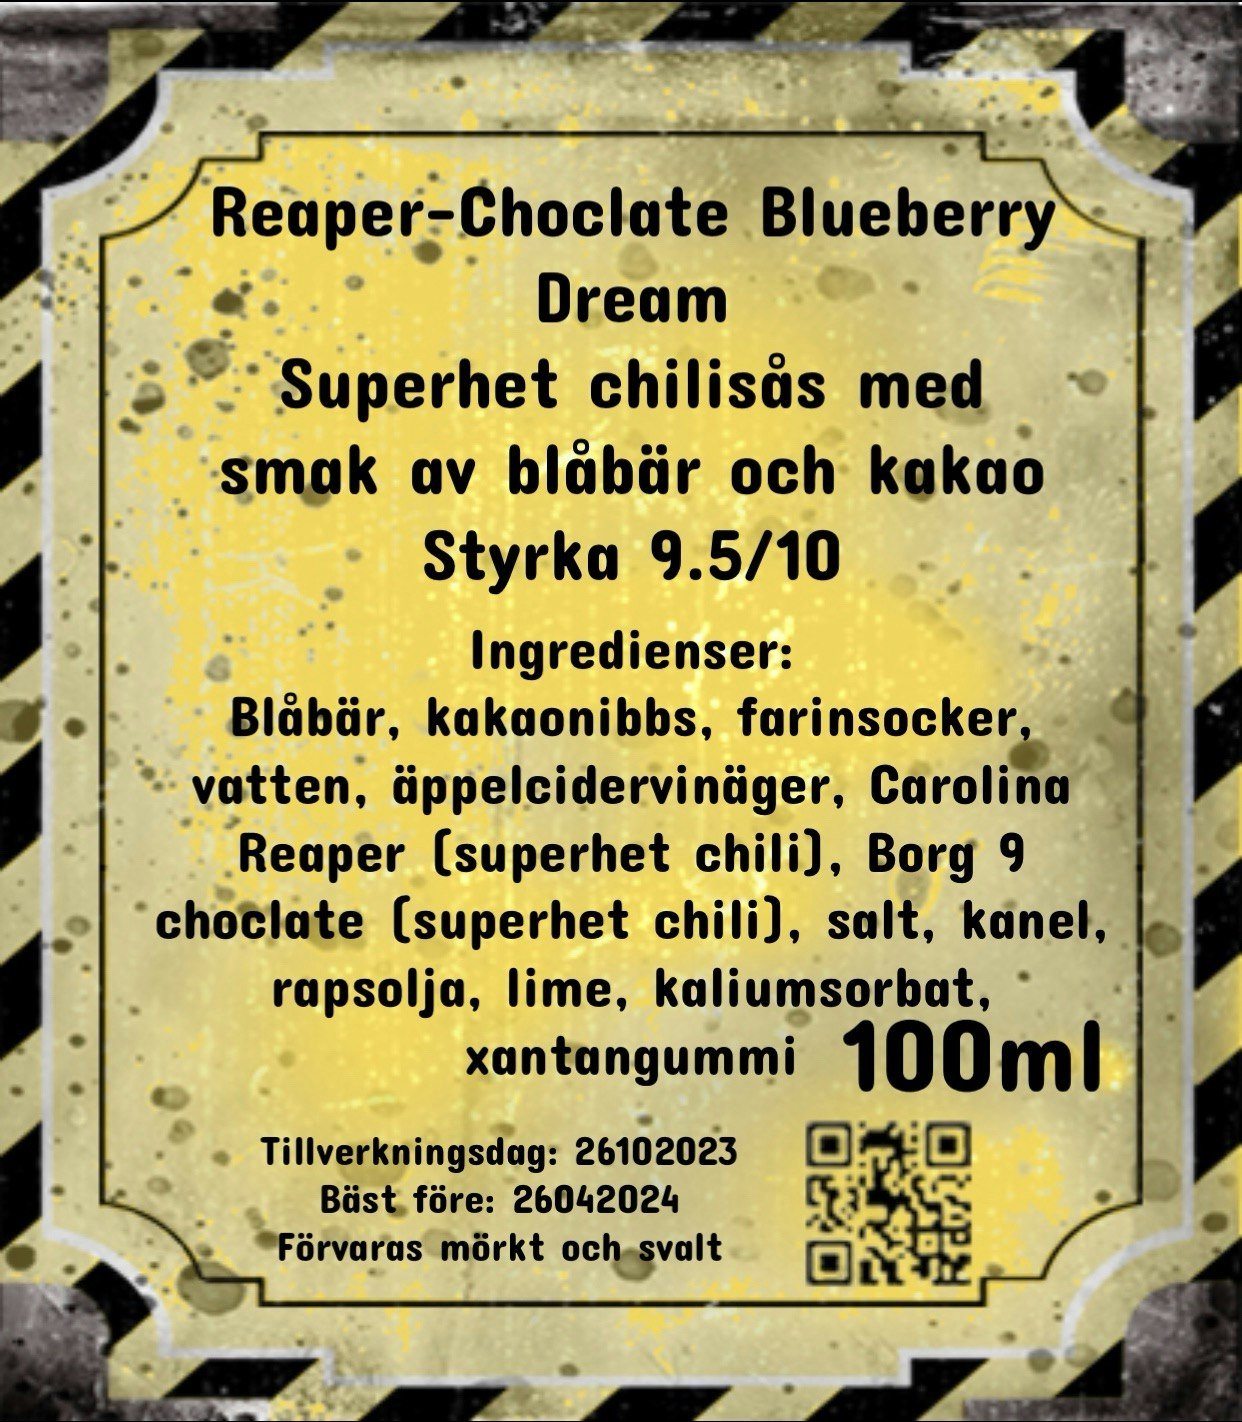 Reaper-Choclate Blueberry Dream